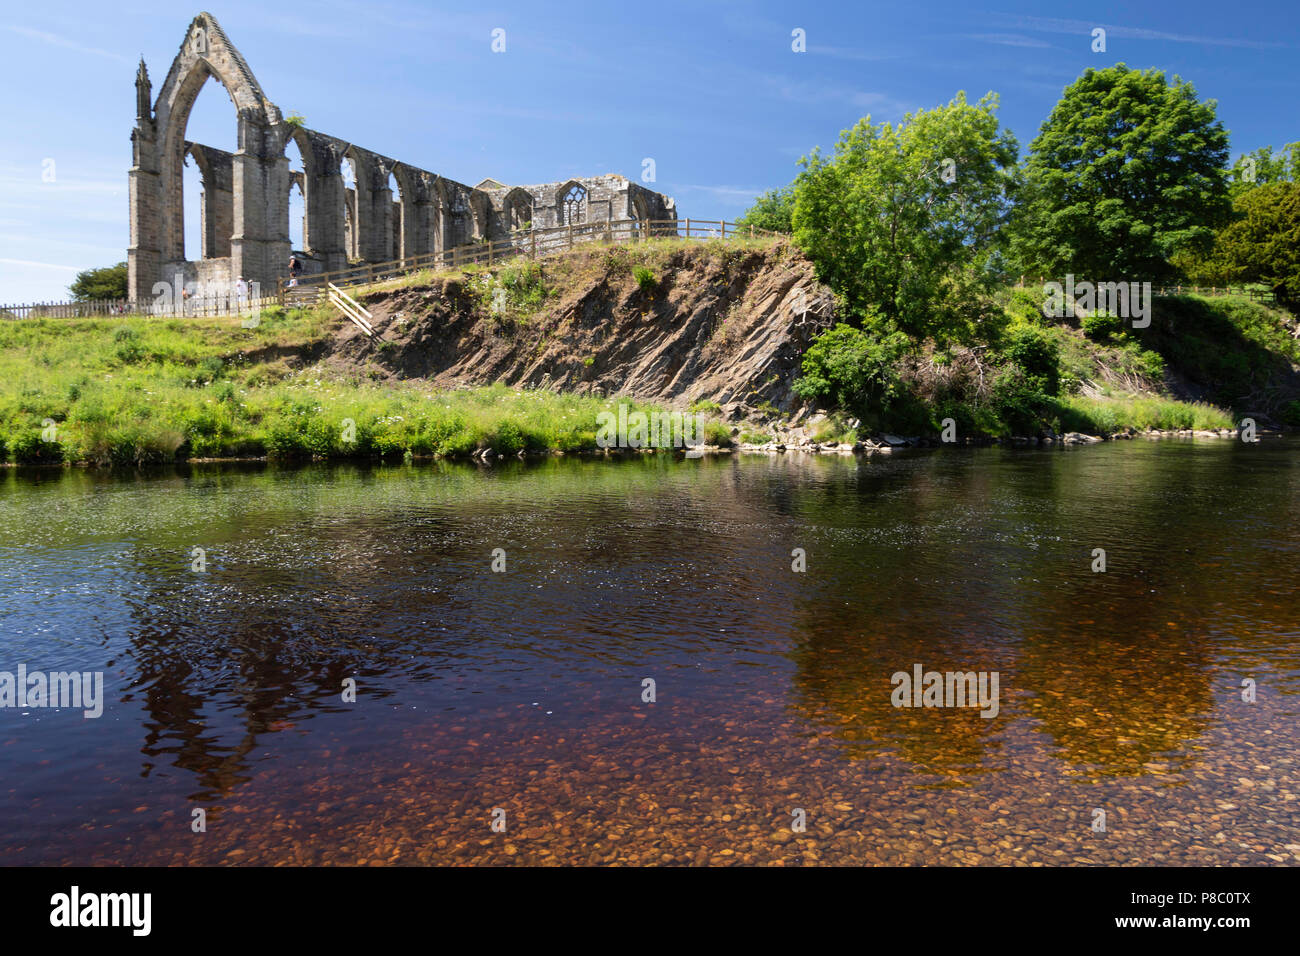 La rivière Wharfe avec l'abbaye de Bolton en arrière-plan, Skipton, North Yorkshire, Angleterre, Royaume-Uni. Banque D'Images